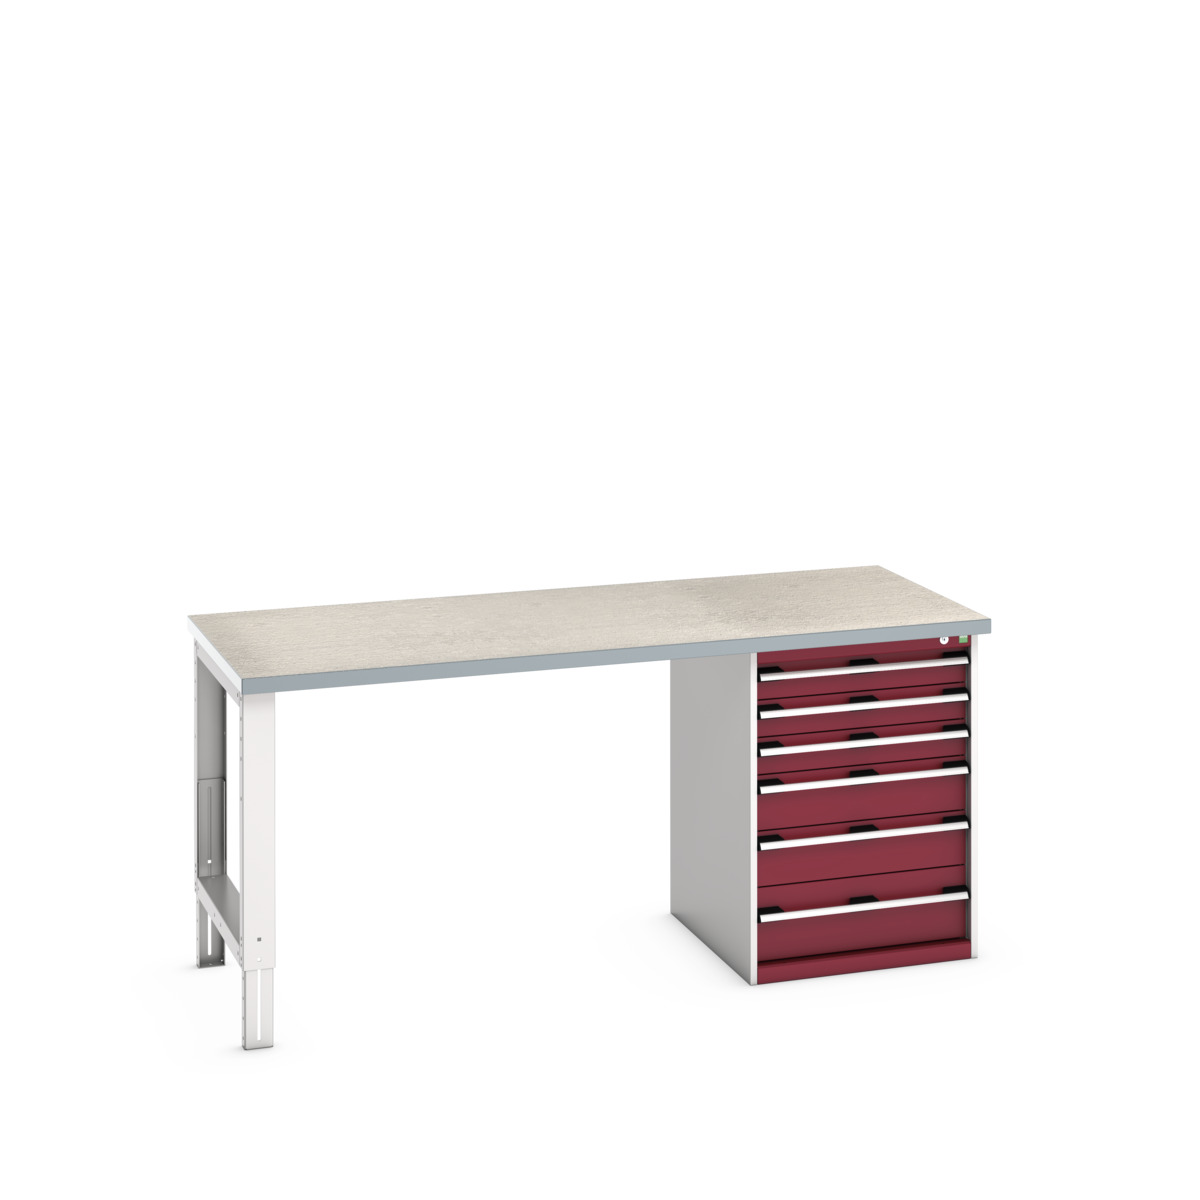 41004120.24V - cubio pedestal bench (lino)